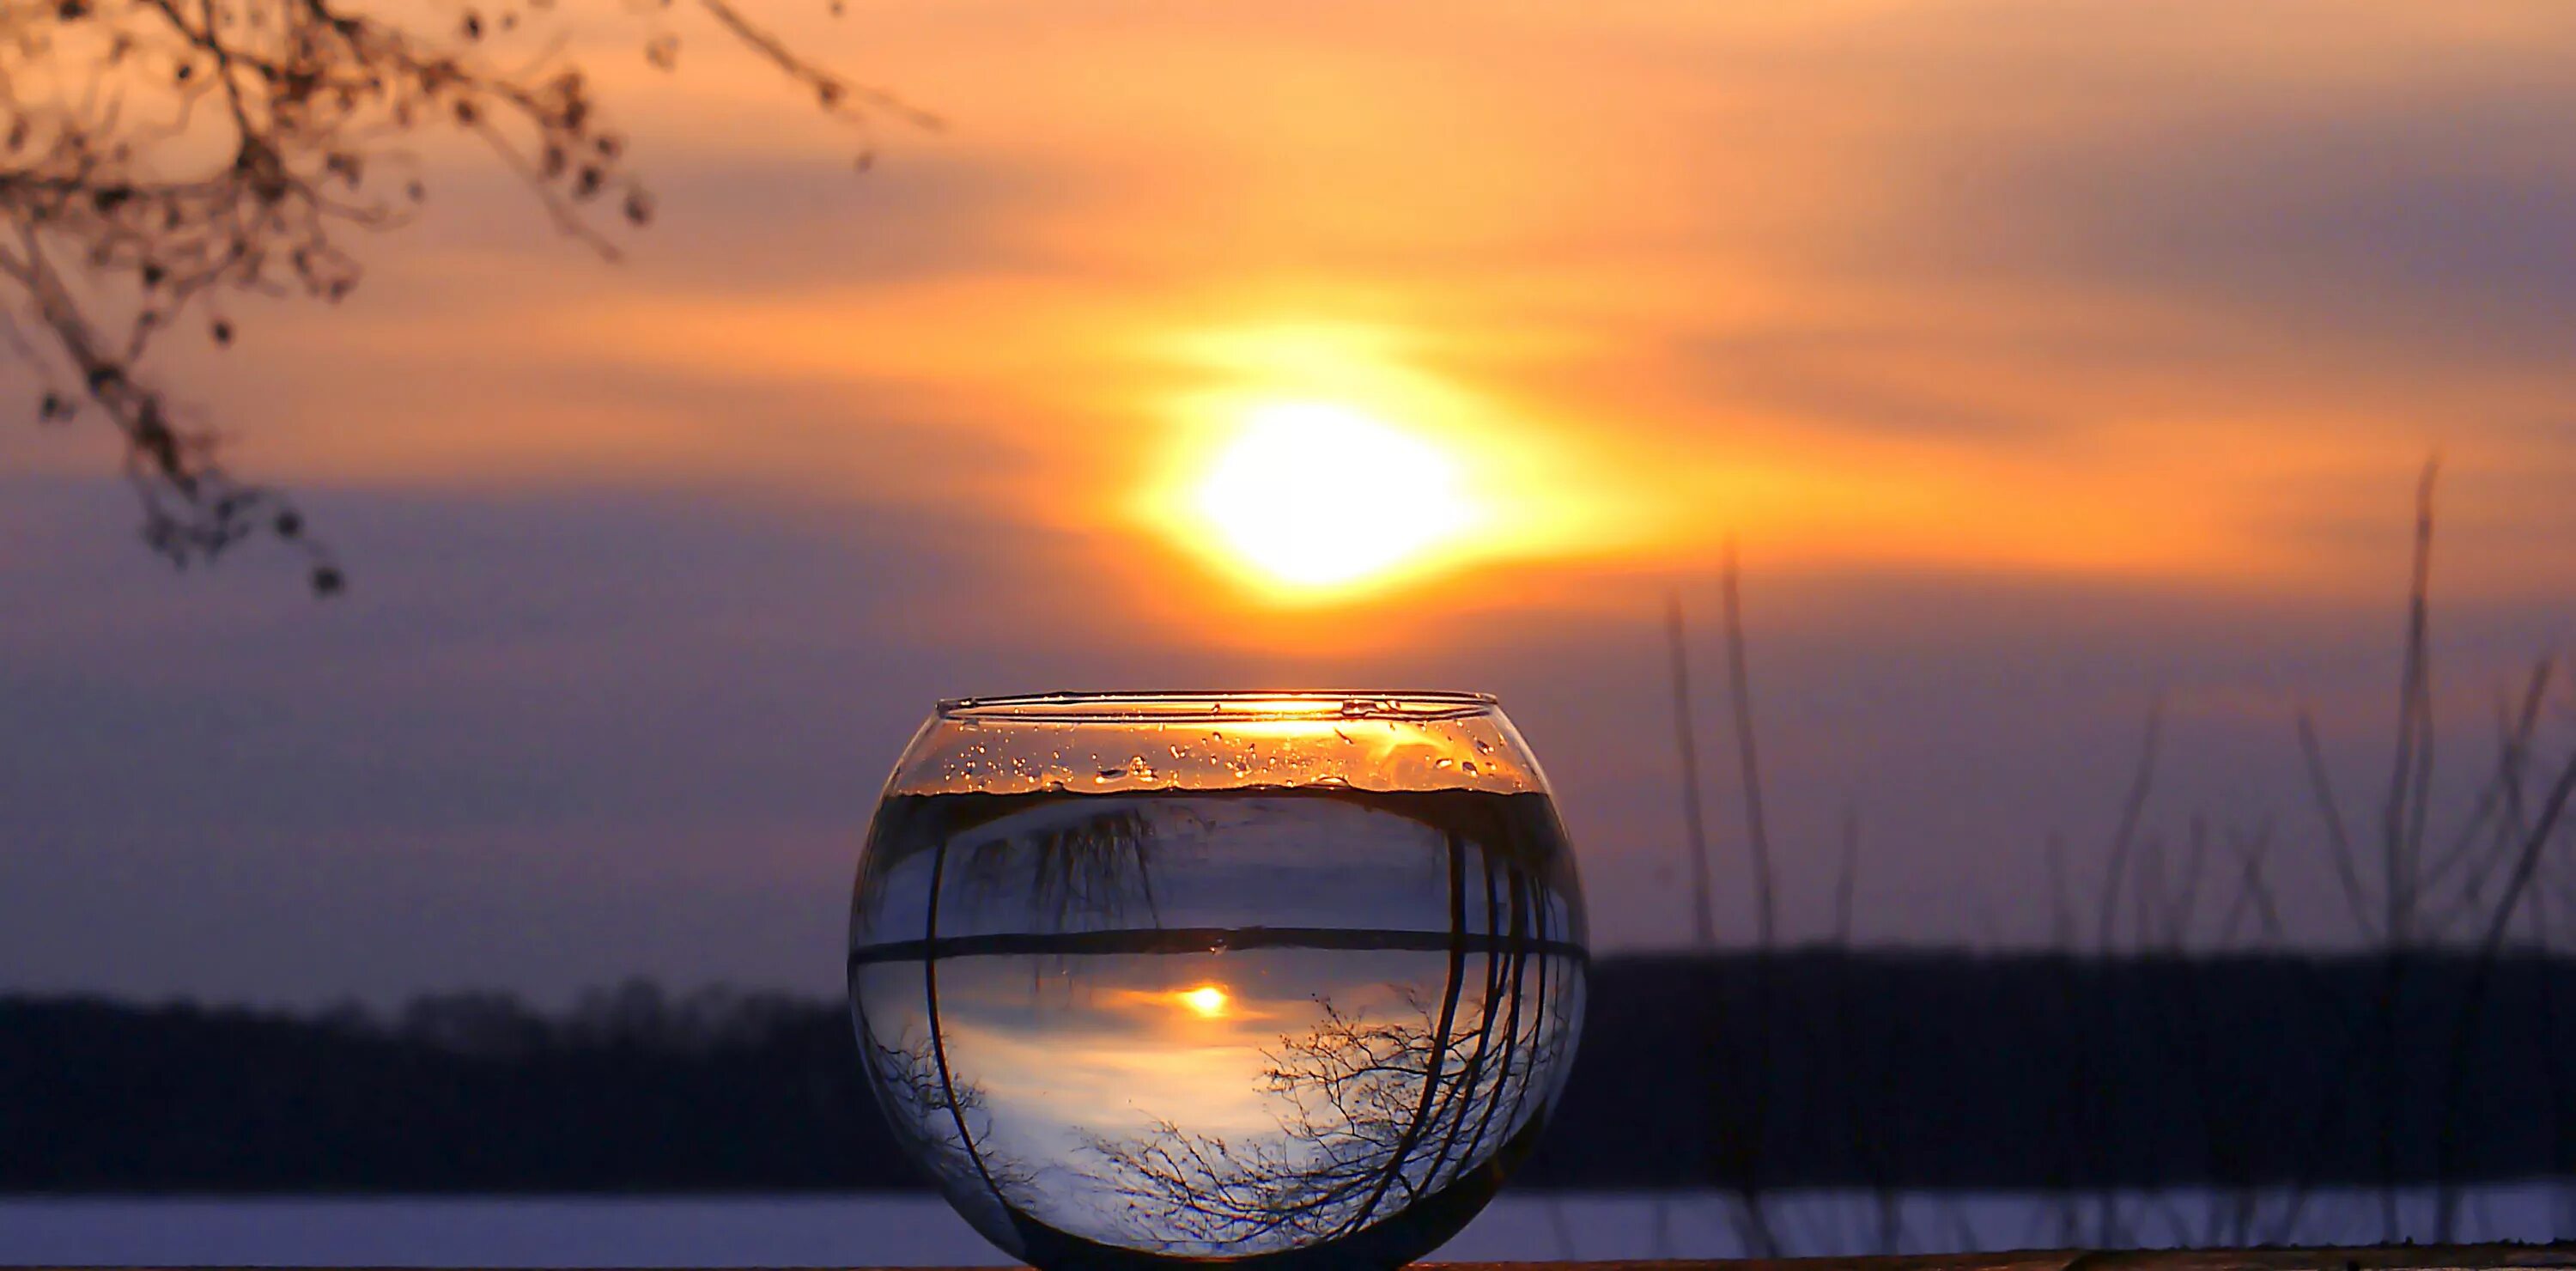 Отражение тема дня. Отражение в бокале. Отражение заката в воде. Отражение солнца в воде. Вода в стакане на фоне солнца.